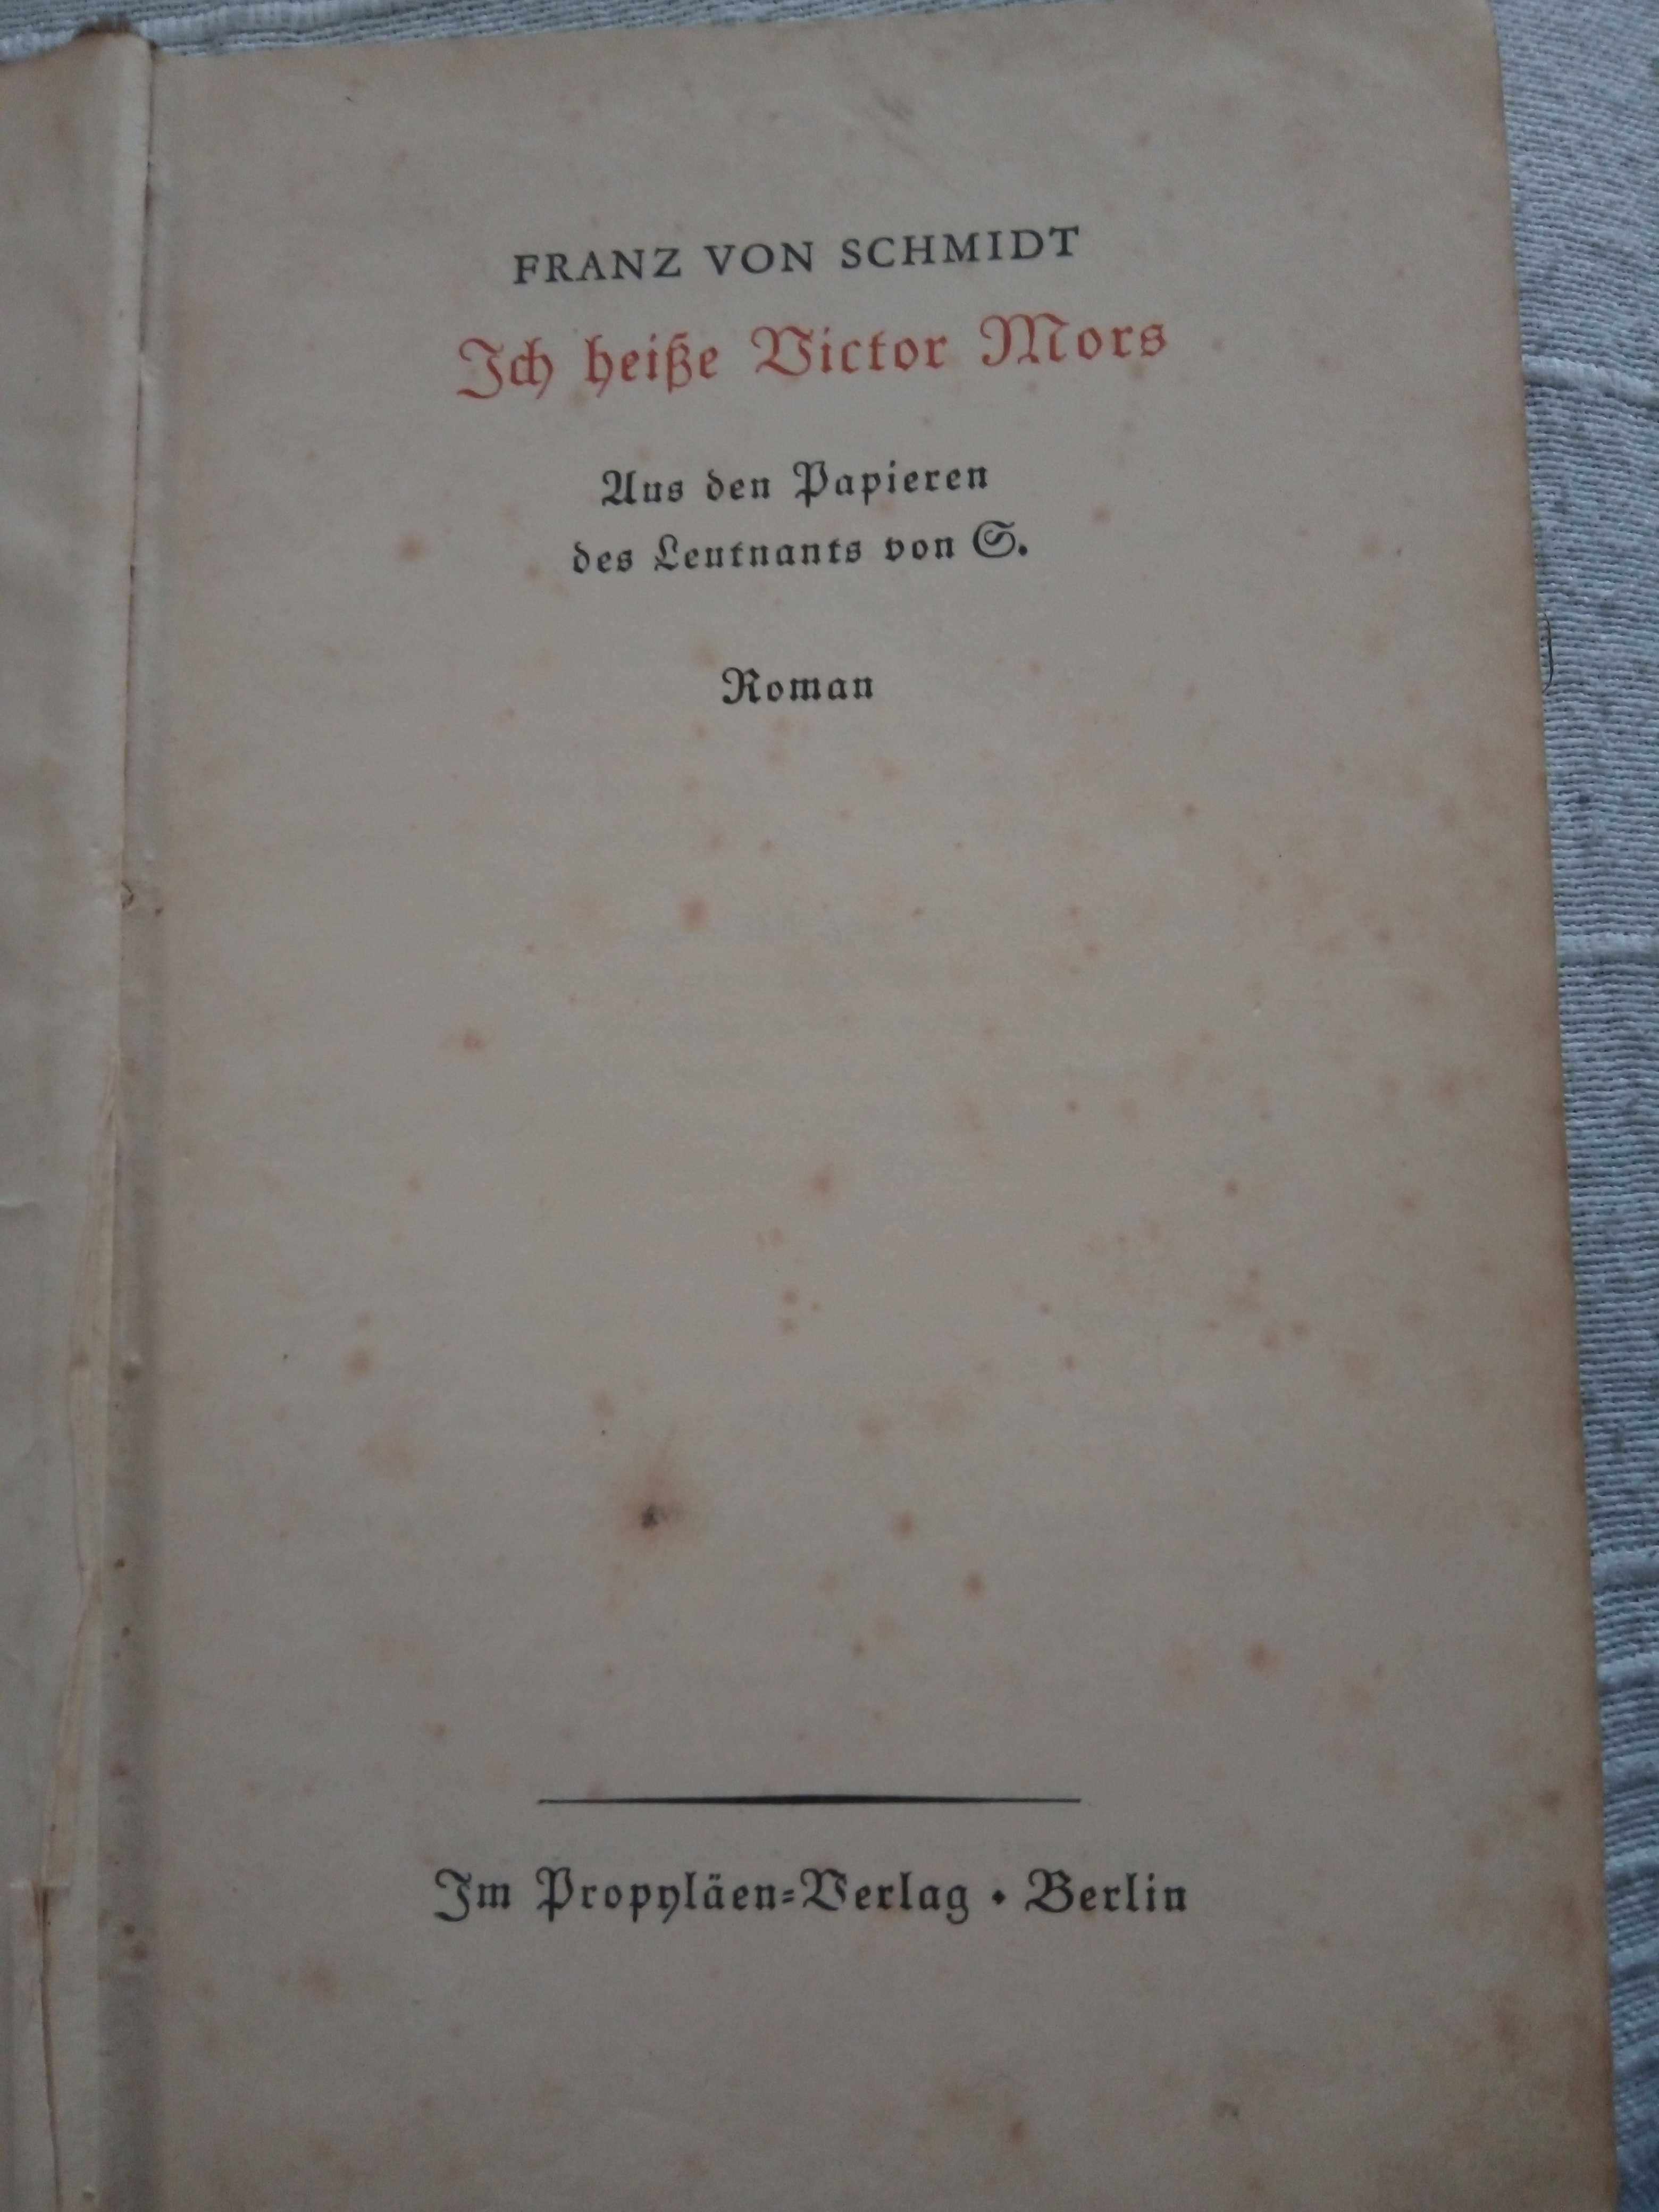 Franz Von Schmidt "Ich Heisse Victor Mors"